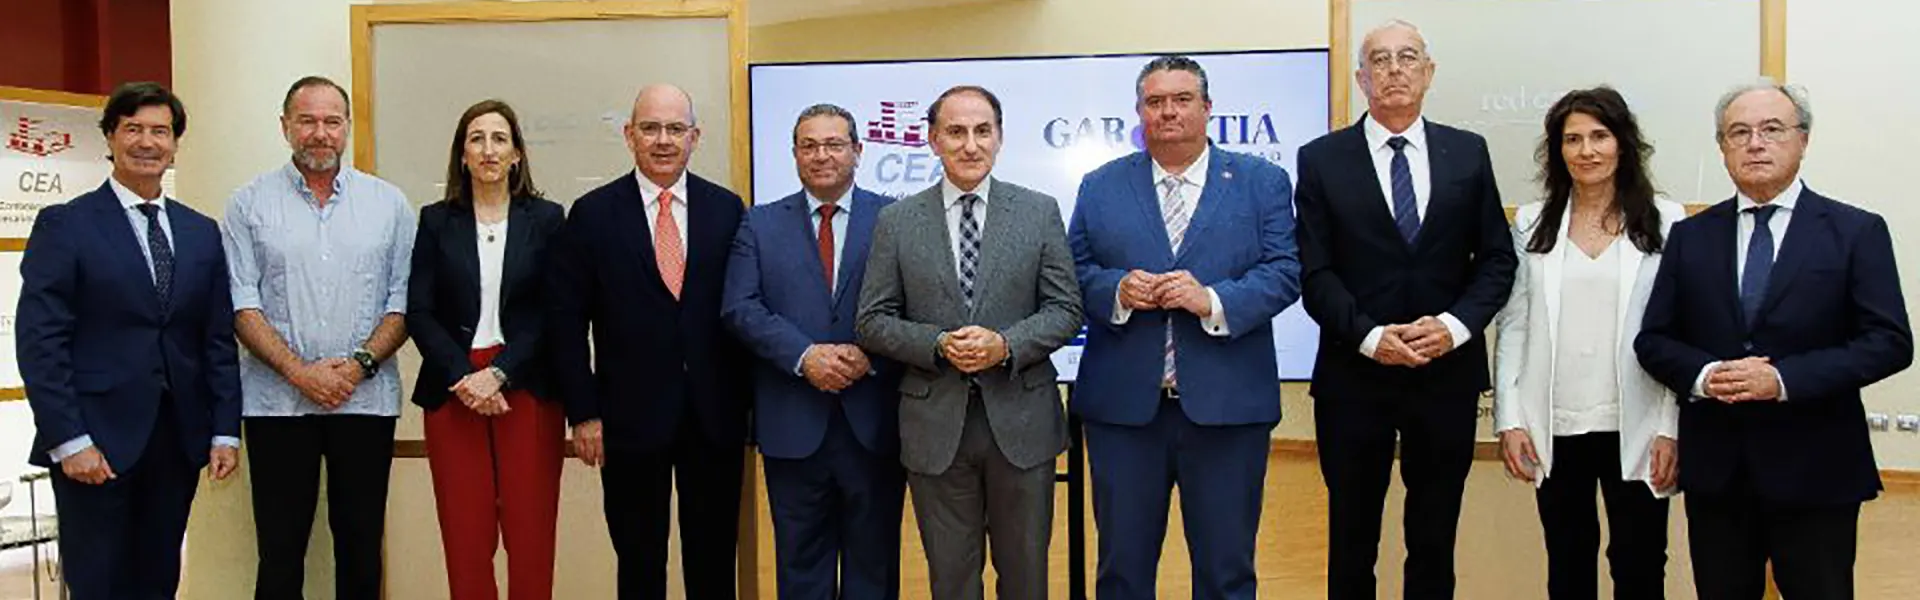 Garántia y las ocho organizaciones empresariales de Andalucía refuerzan su alianza para impulsar la financiación de pymes y autónomos de la región ultimas noticias